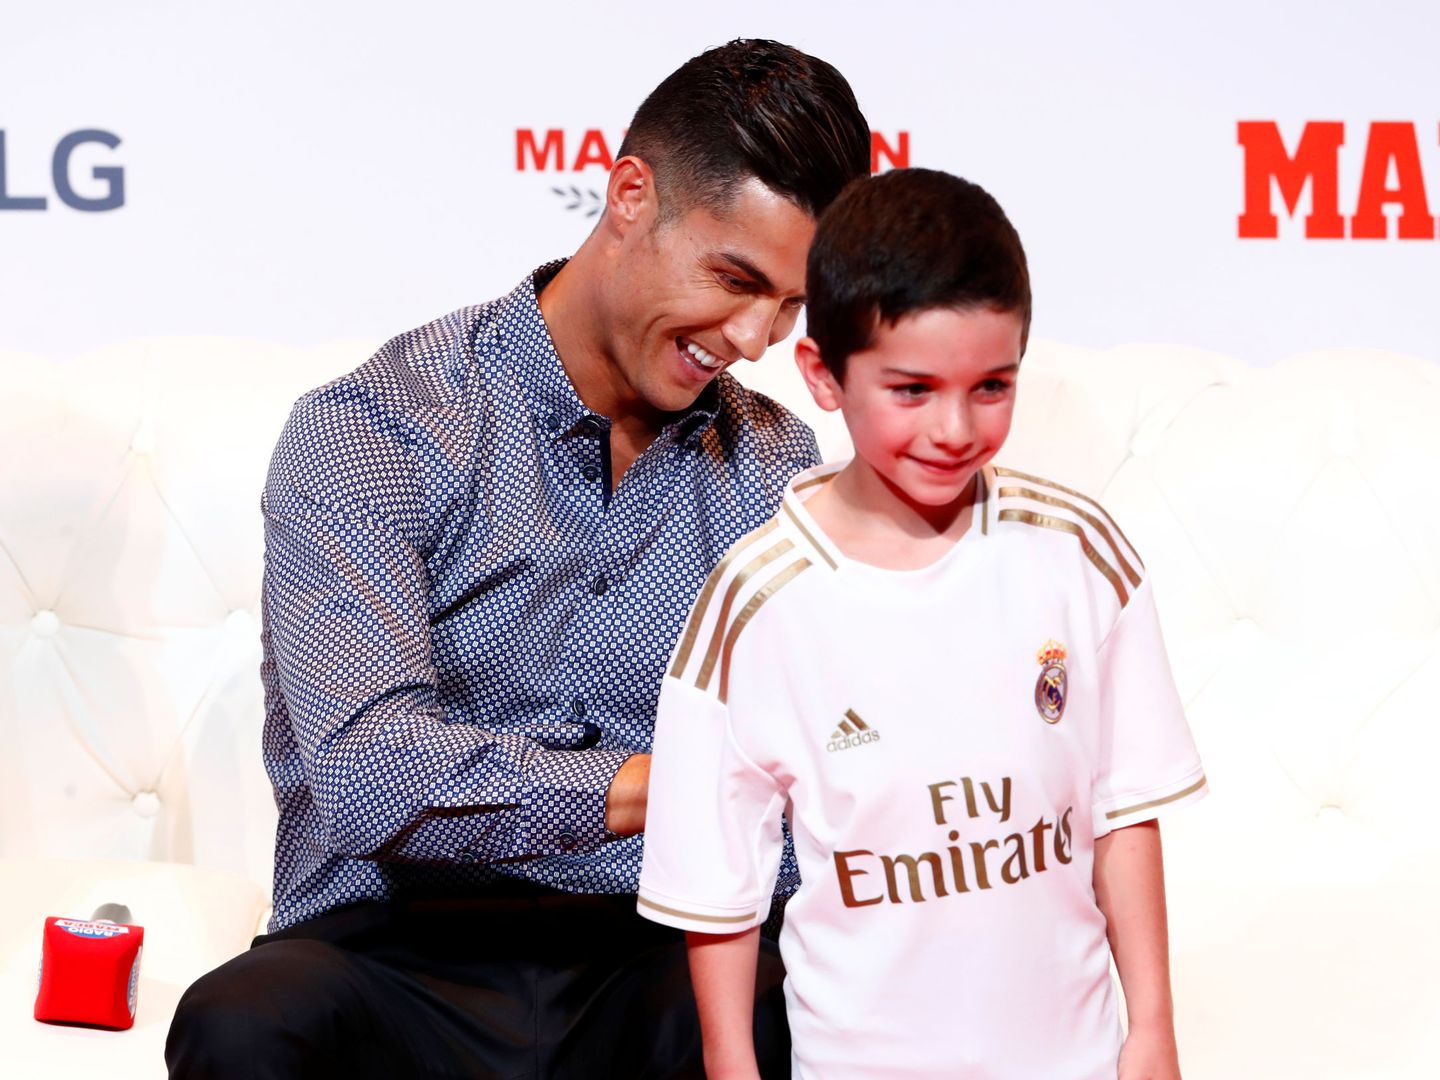 Cristiano Ronaldo le firma la camseta del Madrid a uno de los niños presentes en el acto. (EFE)